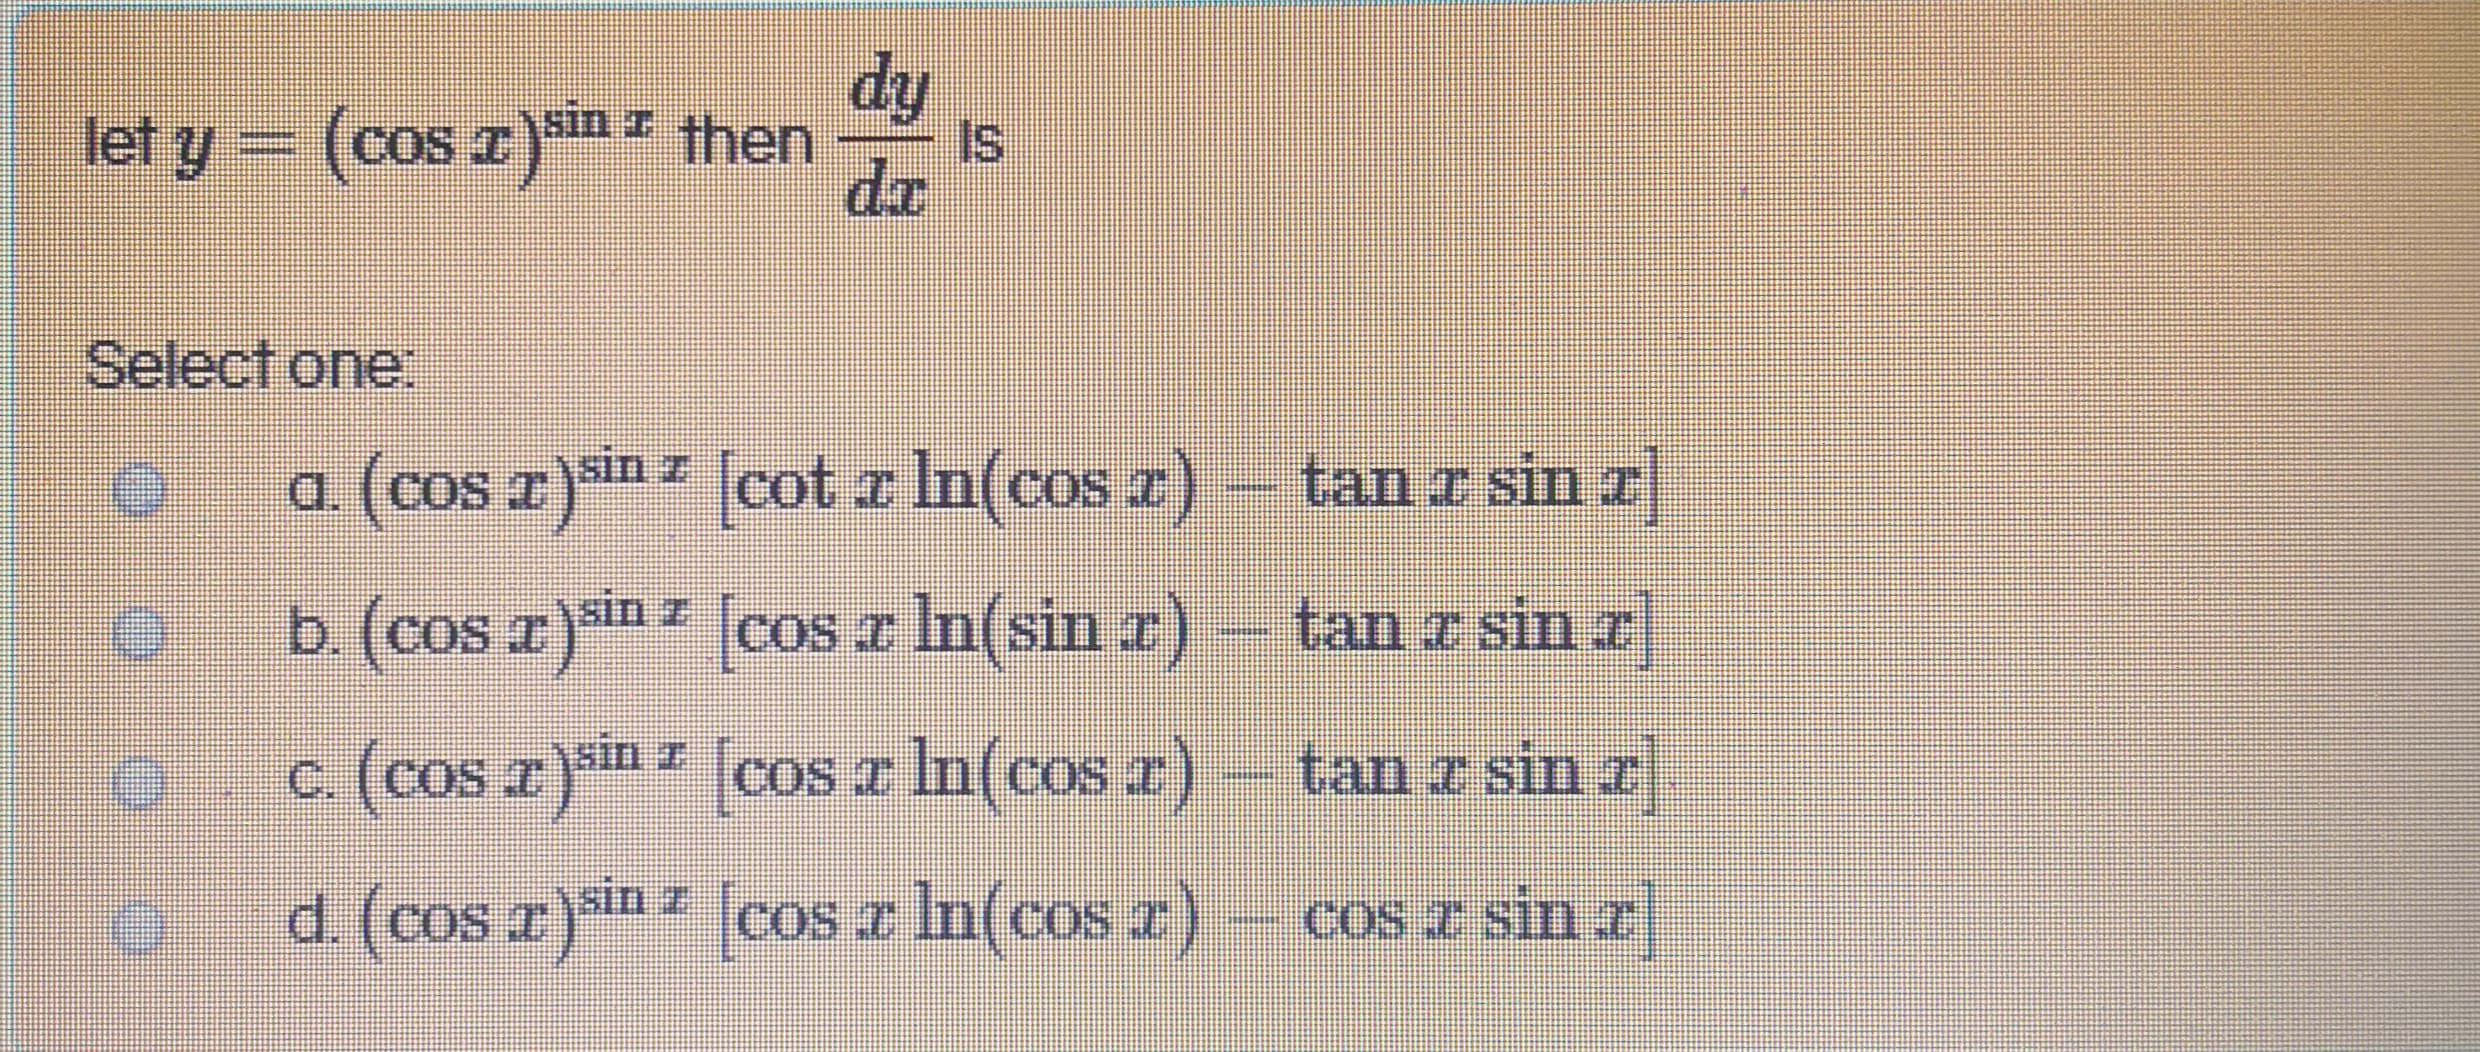 dy
IS
let y = (cos r)m " then
de
sin z
